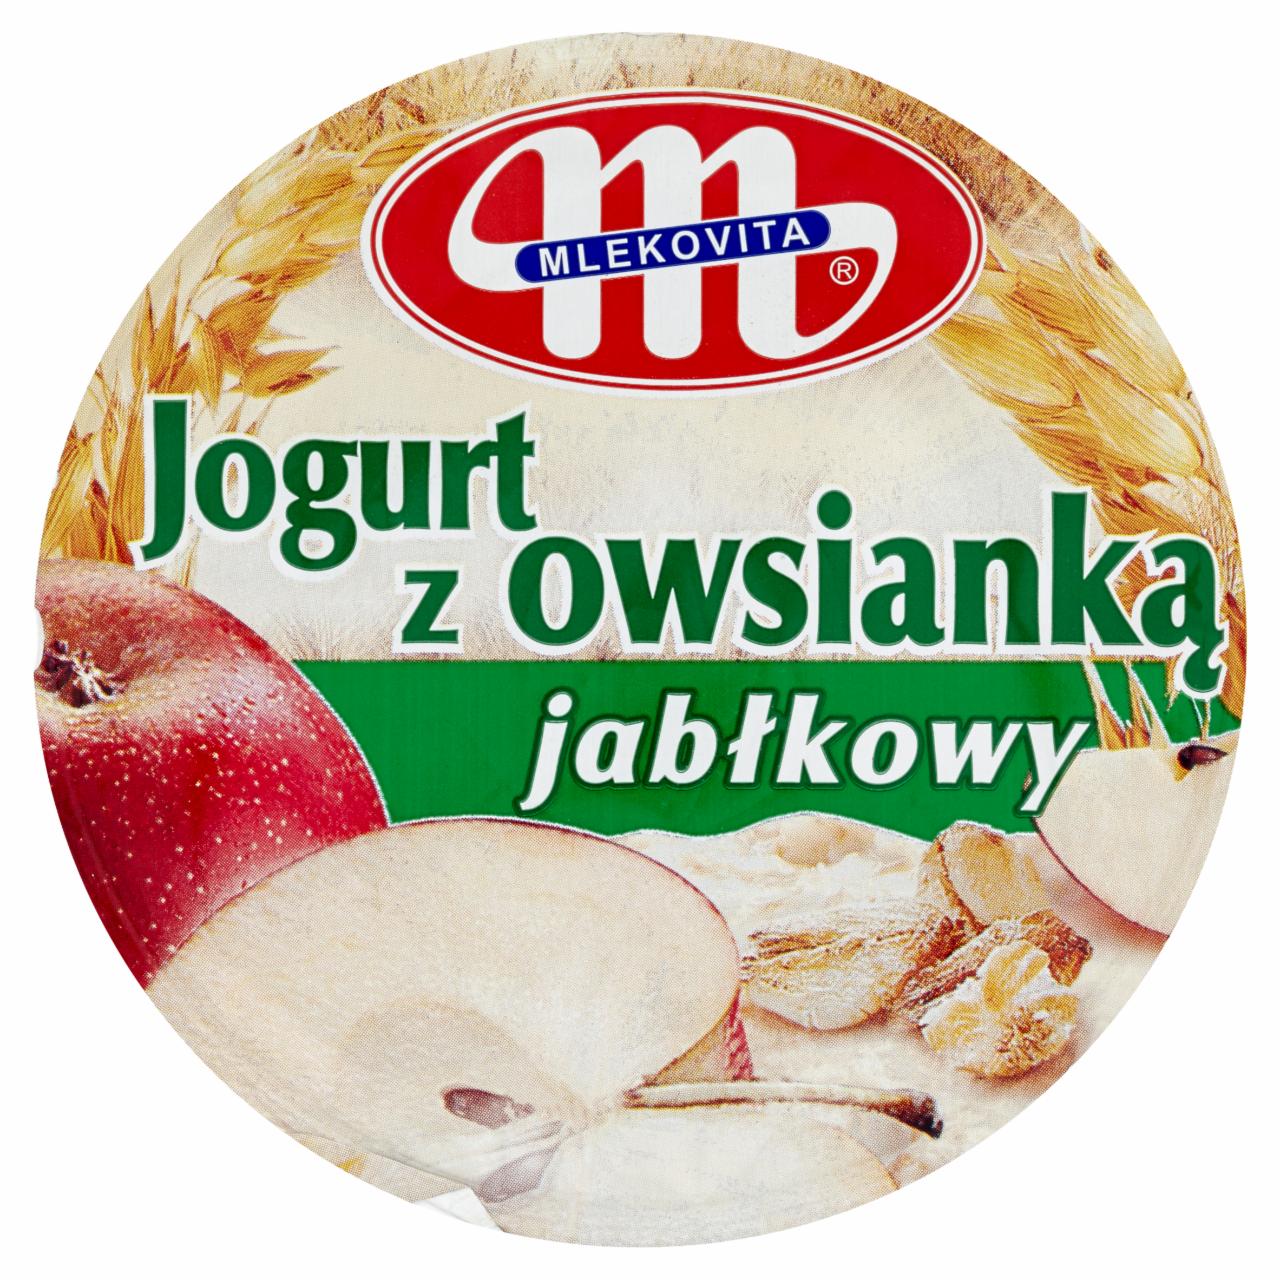 Zdjęcia - Mlekovita Jogurt z owsianką jabłkowy 180 g